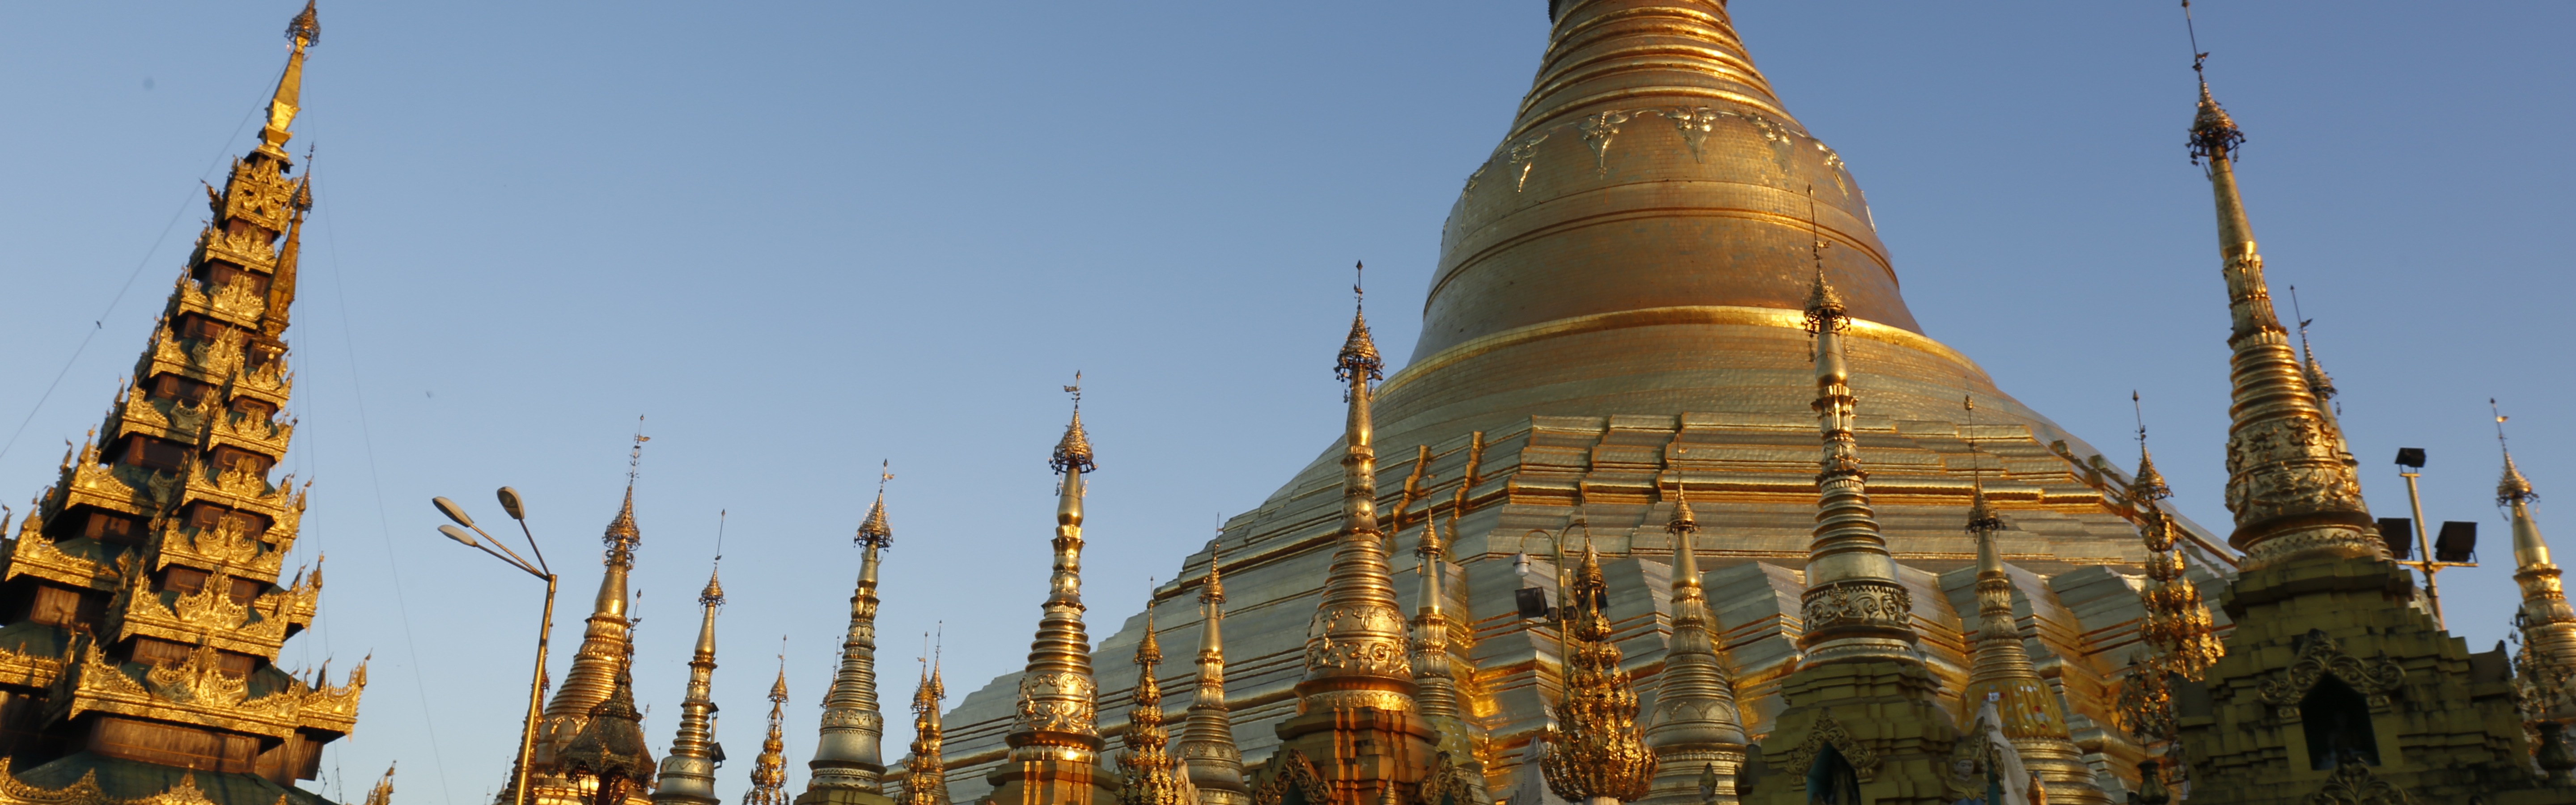 Burma's Lost Royals